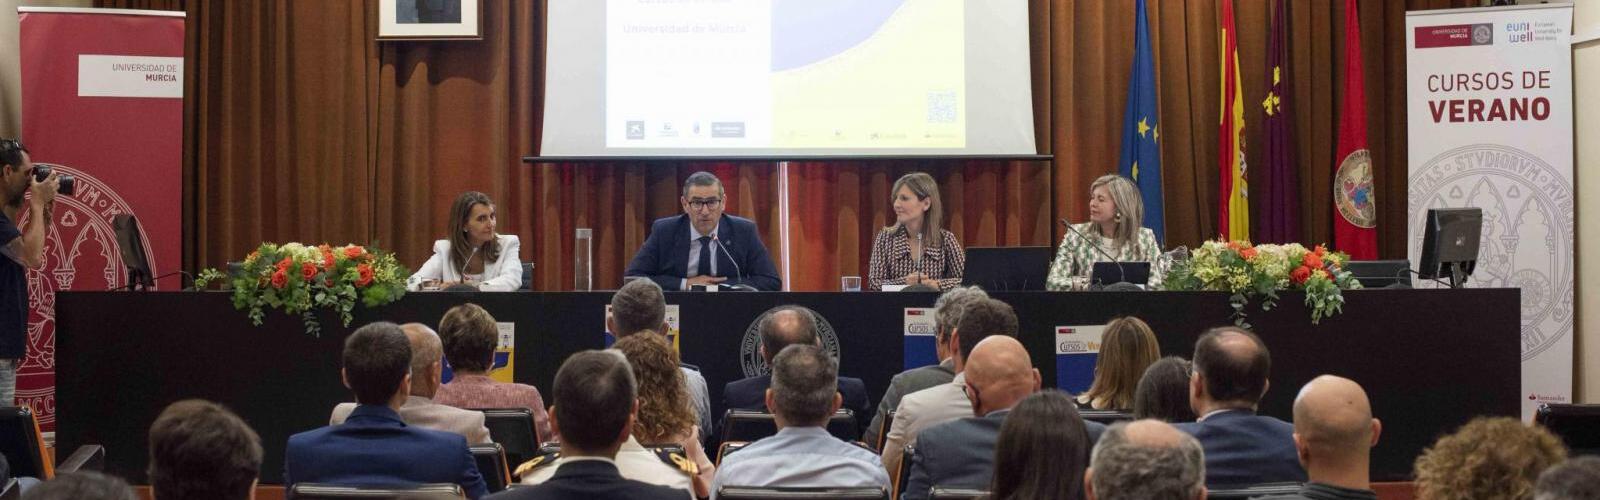 La Universidad de Murcia presenta la programación de Cursos de Verano 2023 con 49 actividades entre junio y septiembre